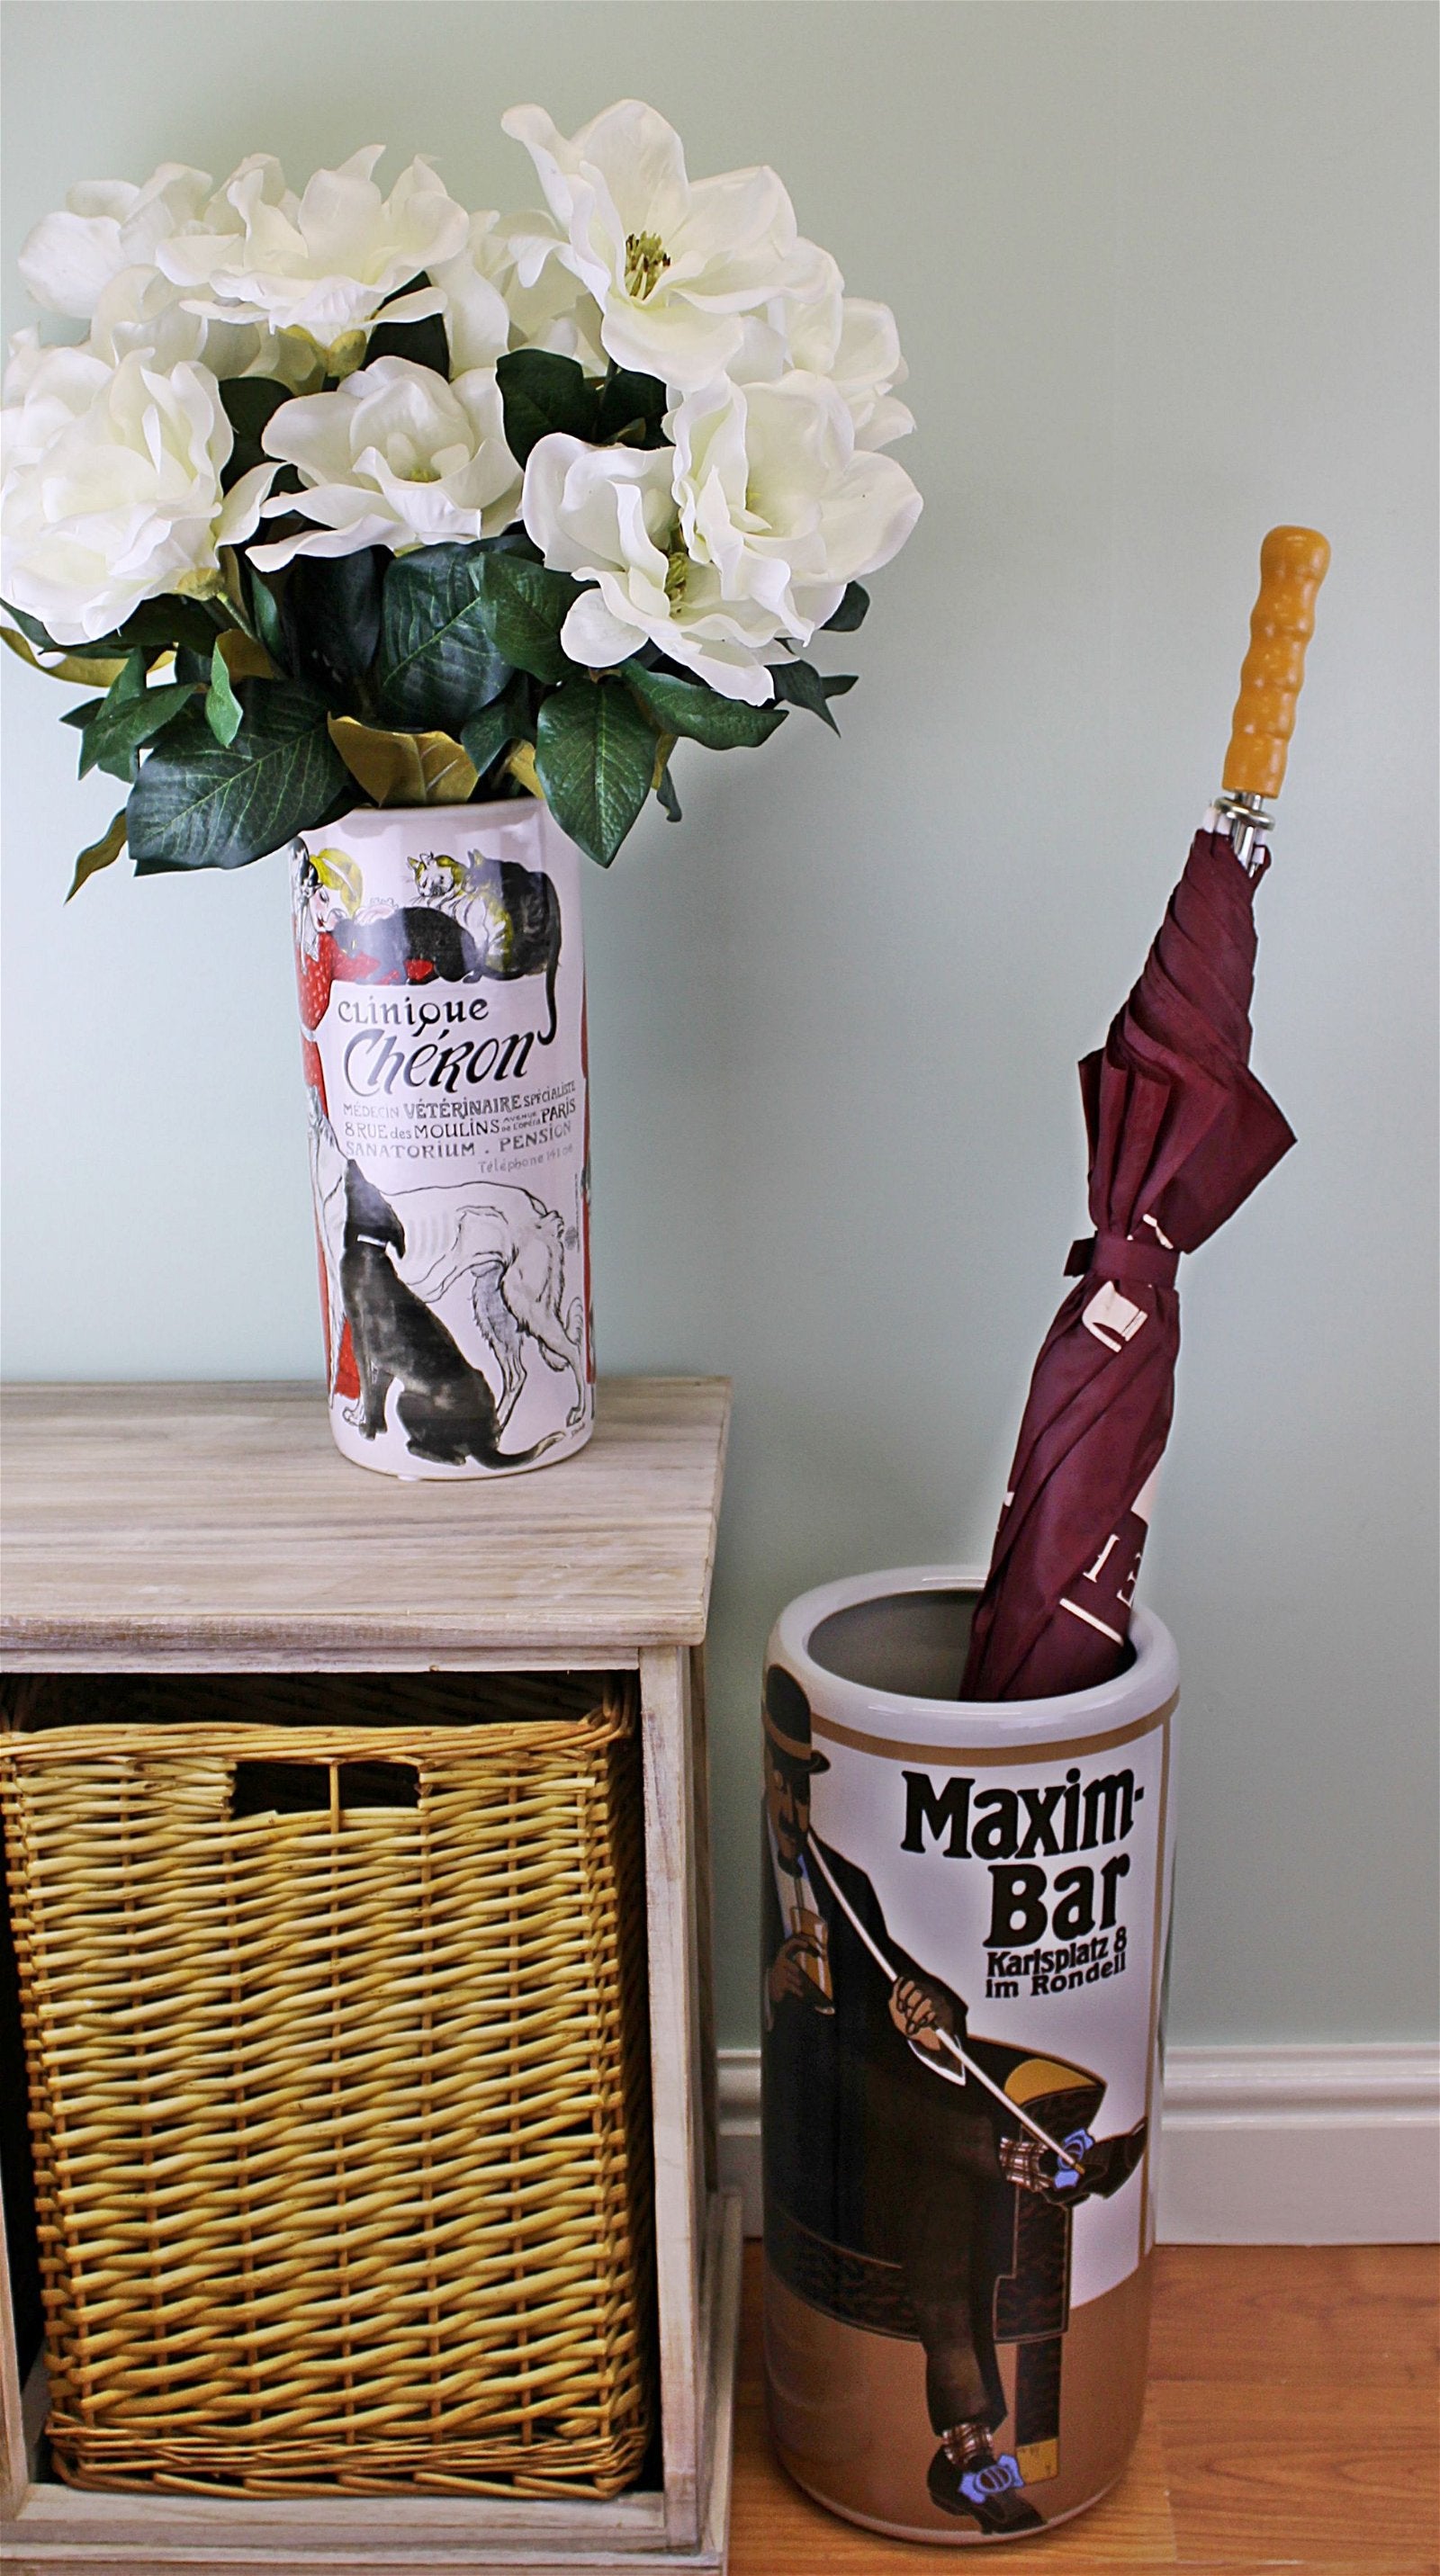 Umbrella Stand, Maxim Bar Design With Free Vase